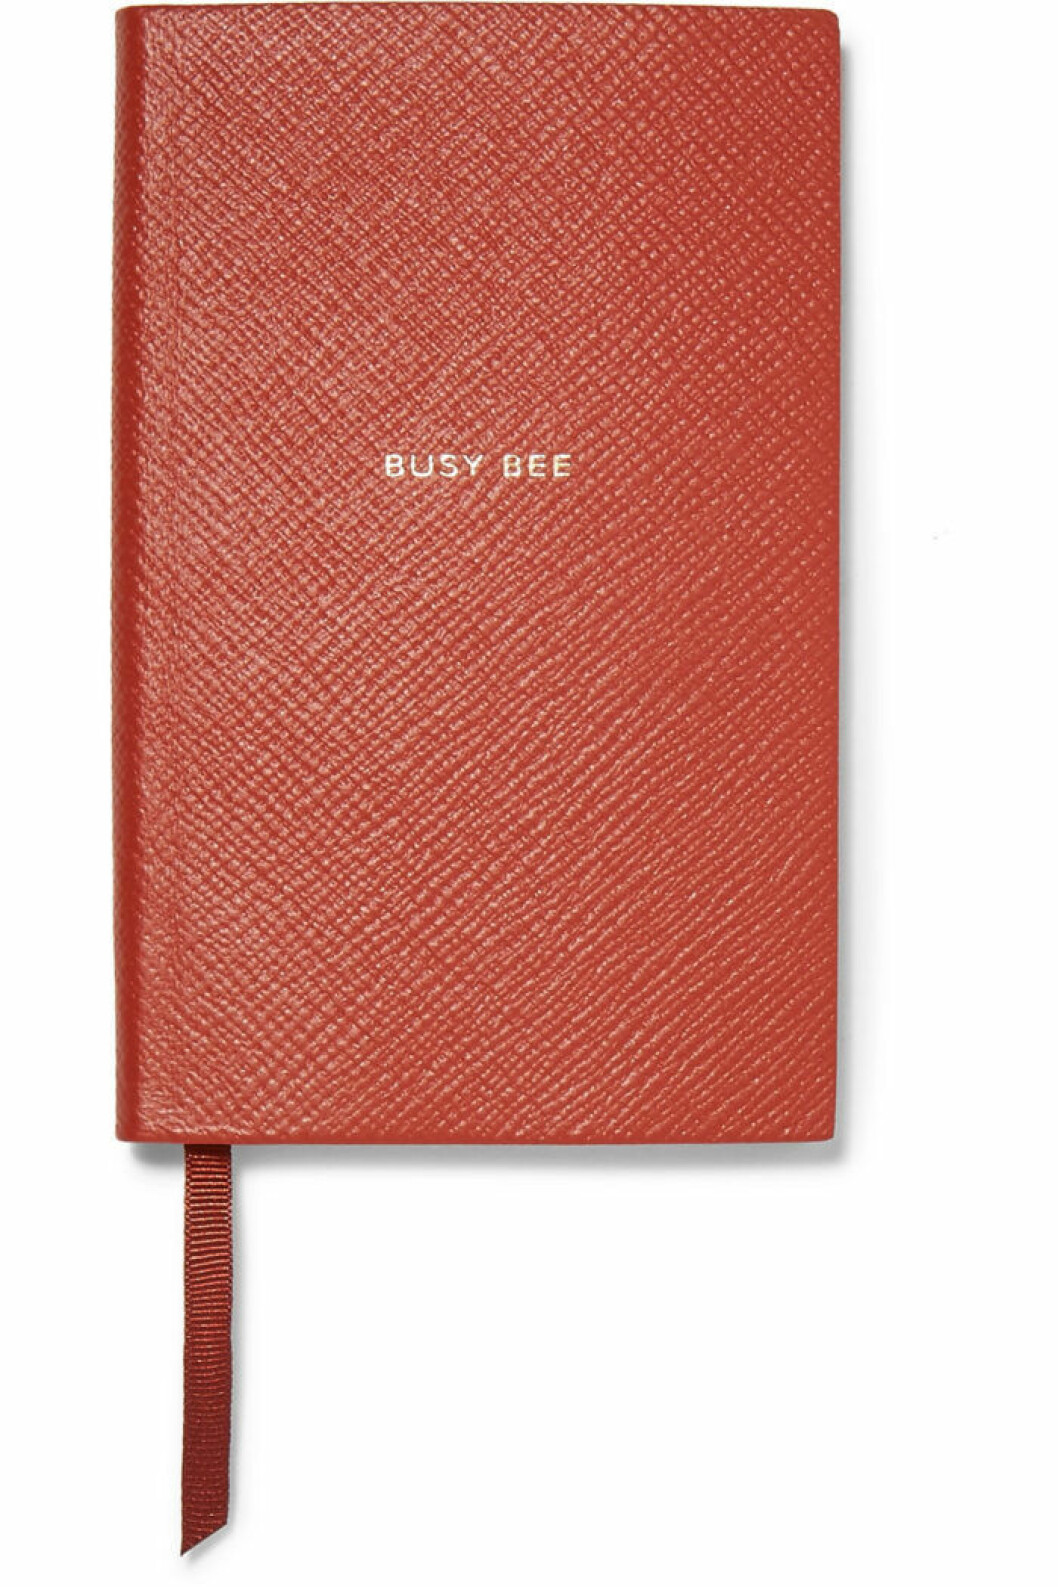 Stilfullt anteckningsblock från Smythson i en klassisk röd nyans med texten "Busy Bee".